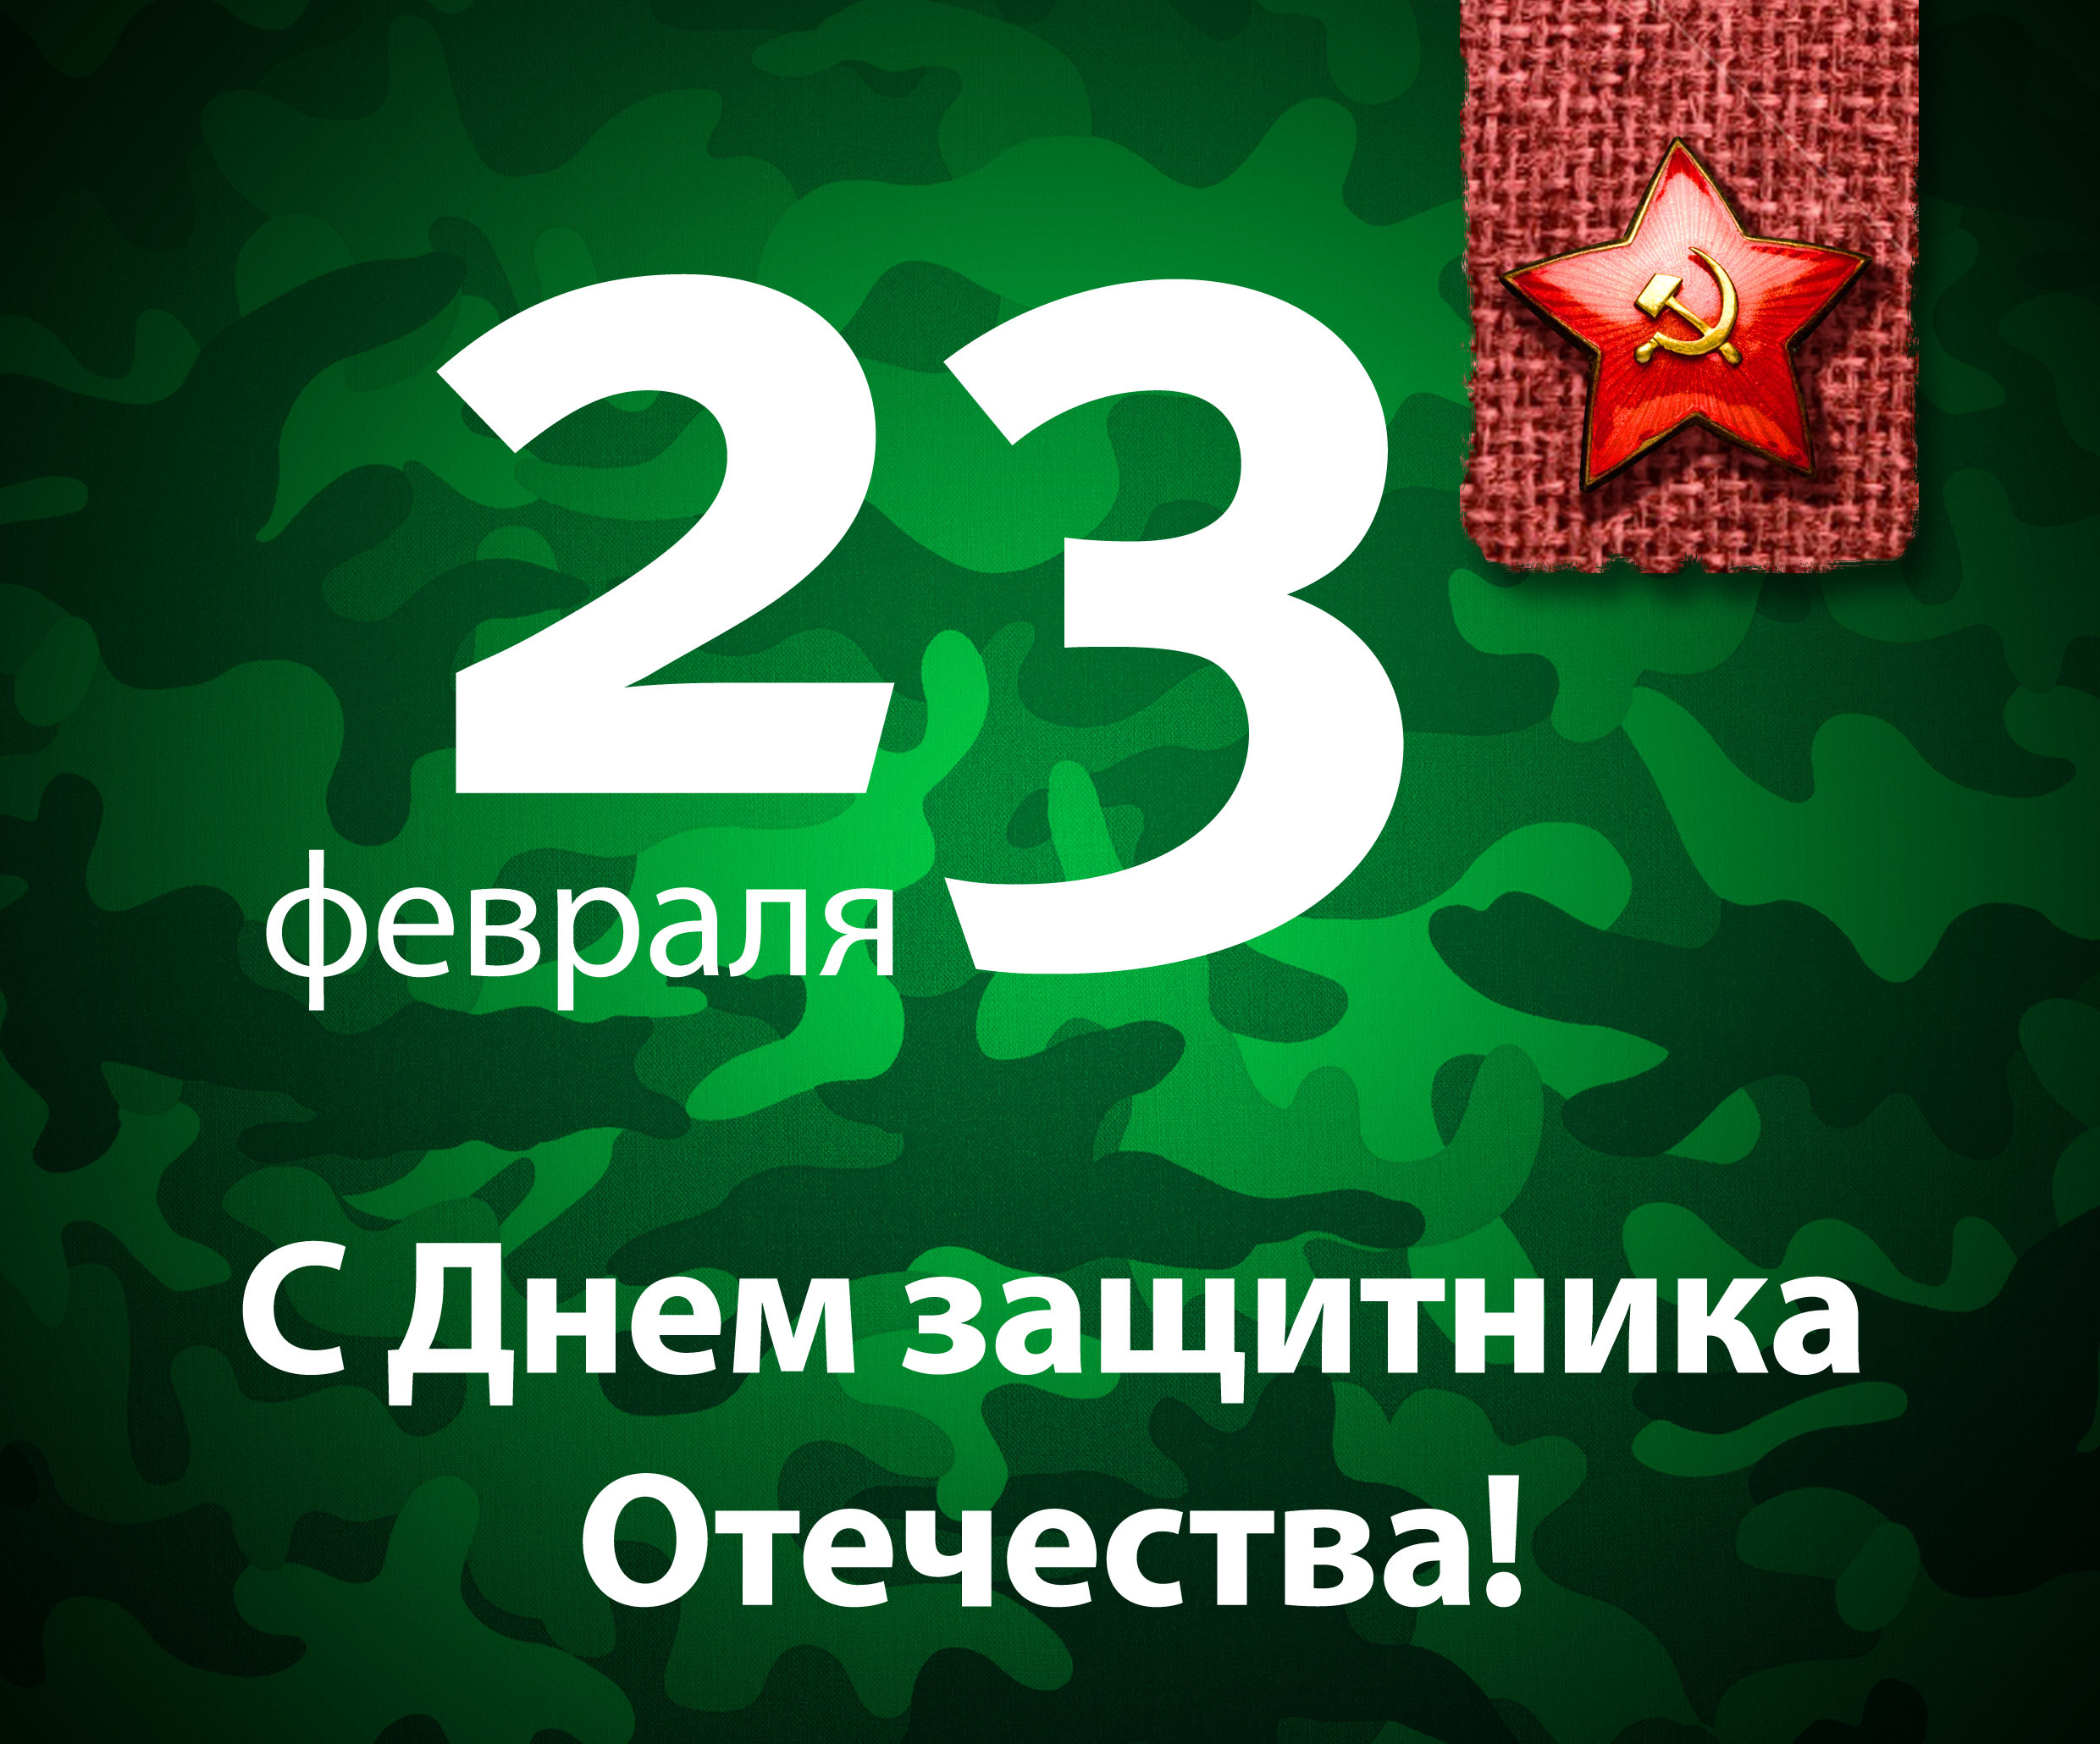 Holidays___Army_Congratulations_on_Febru